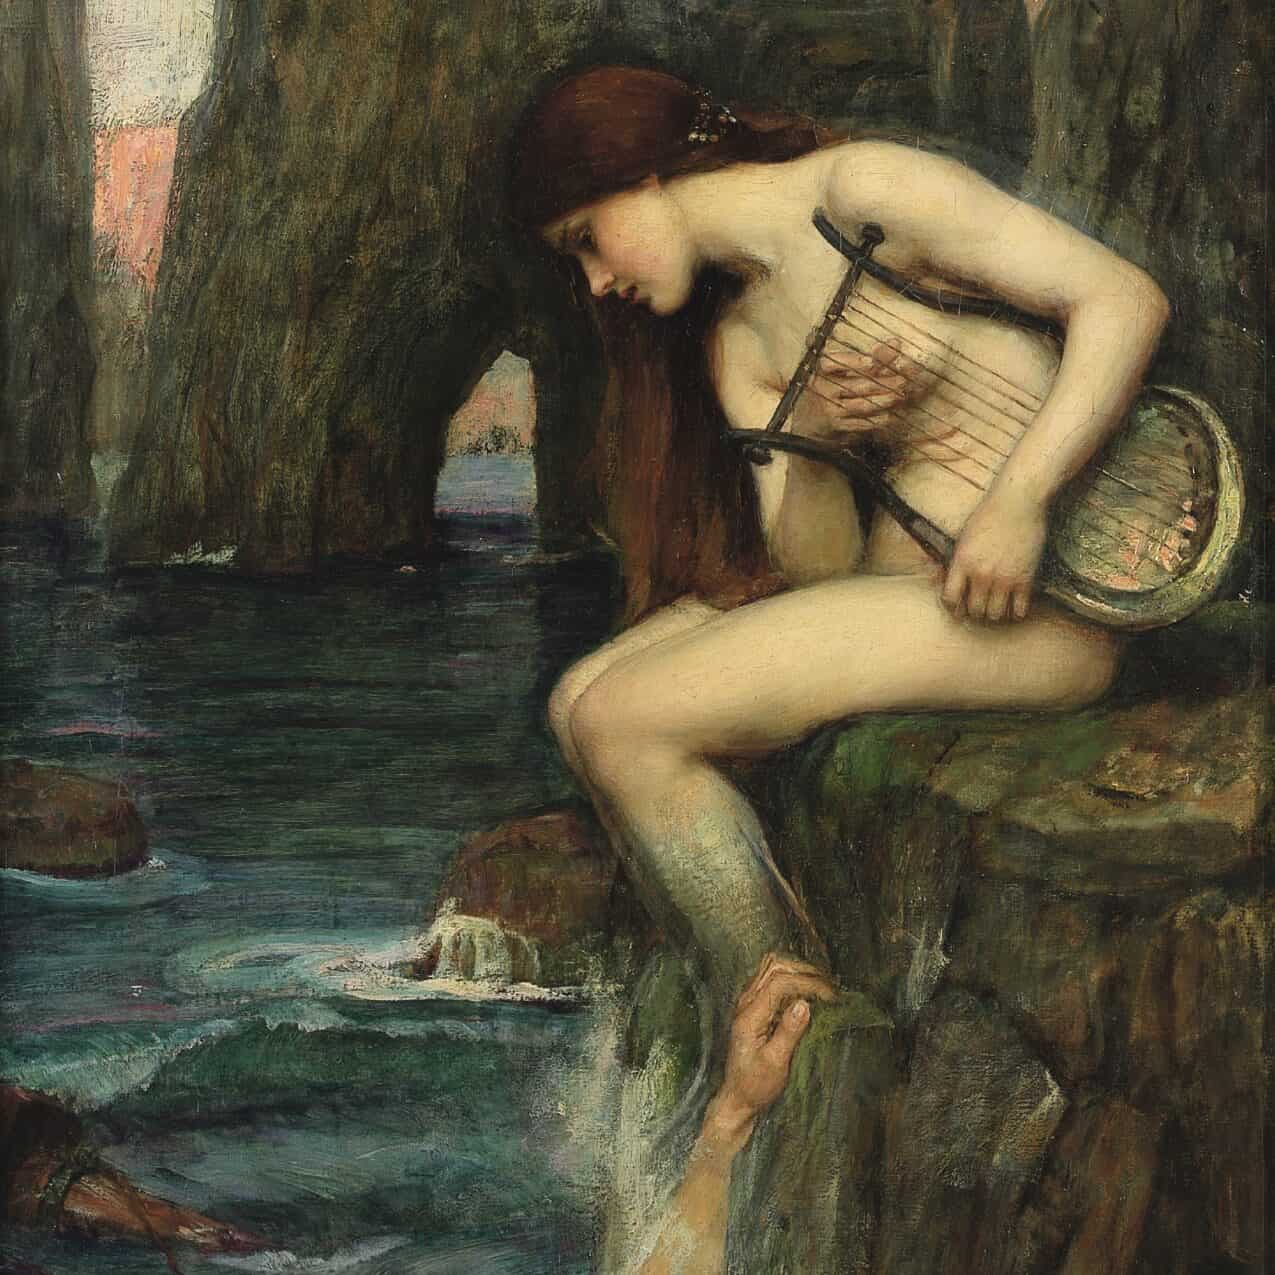 John William Waterhouse - The Siren (1900)